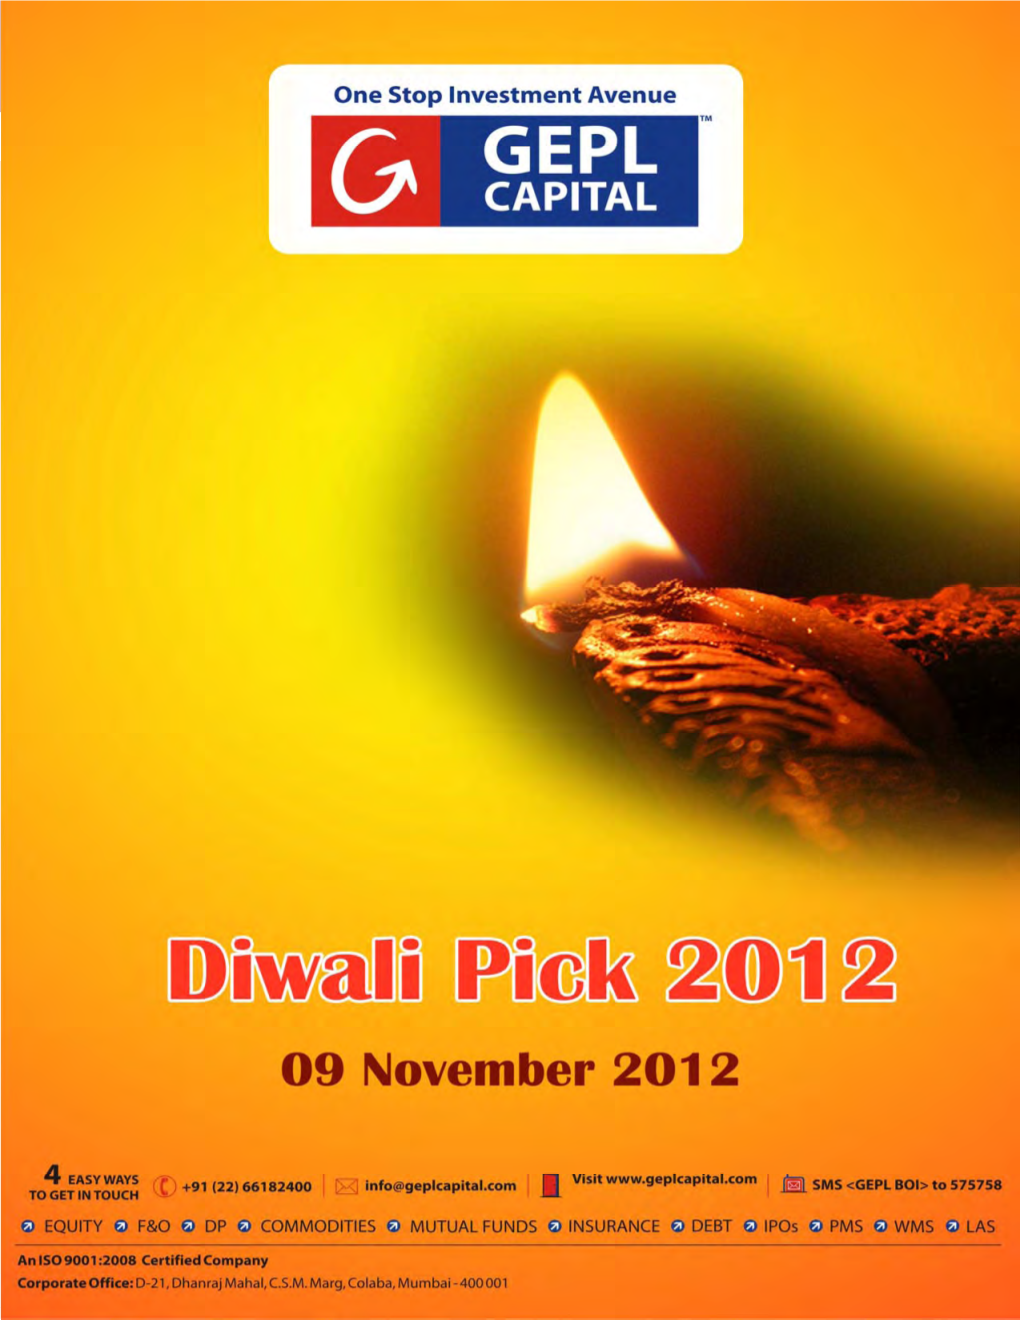 GEPL's 5 Techno-Funda Stocks for Diwali 2012